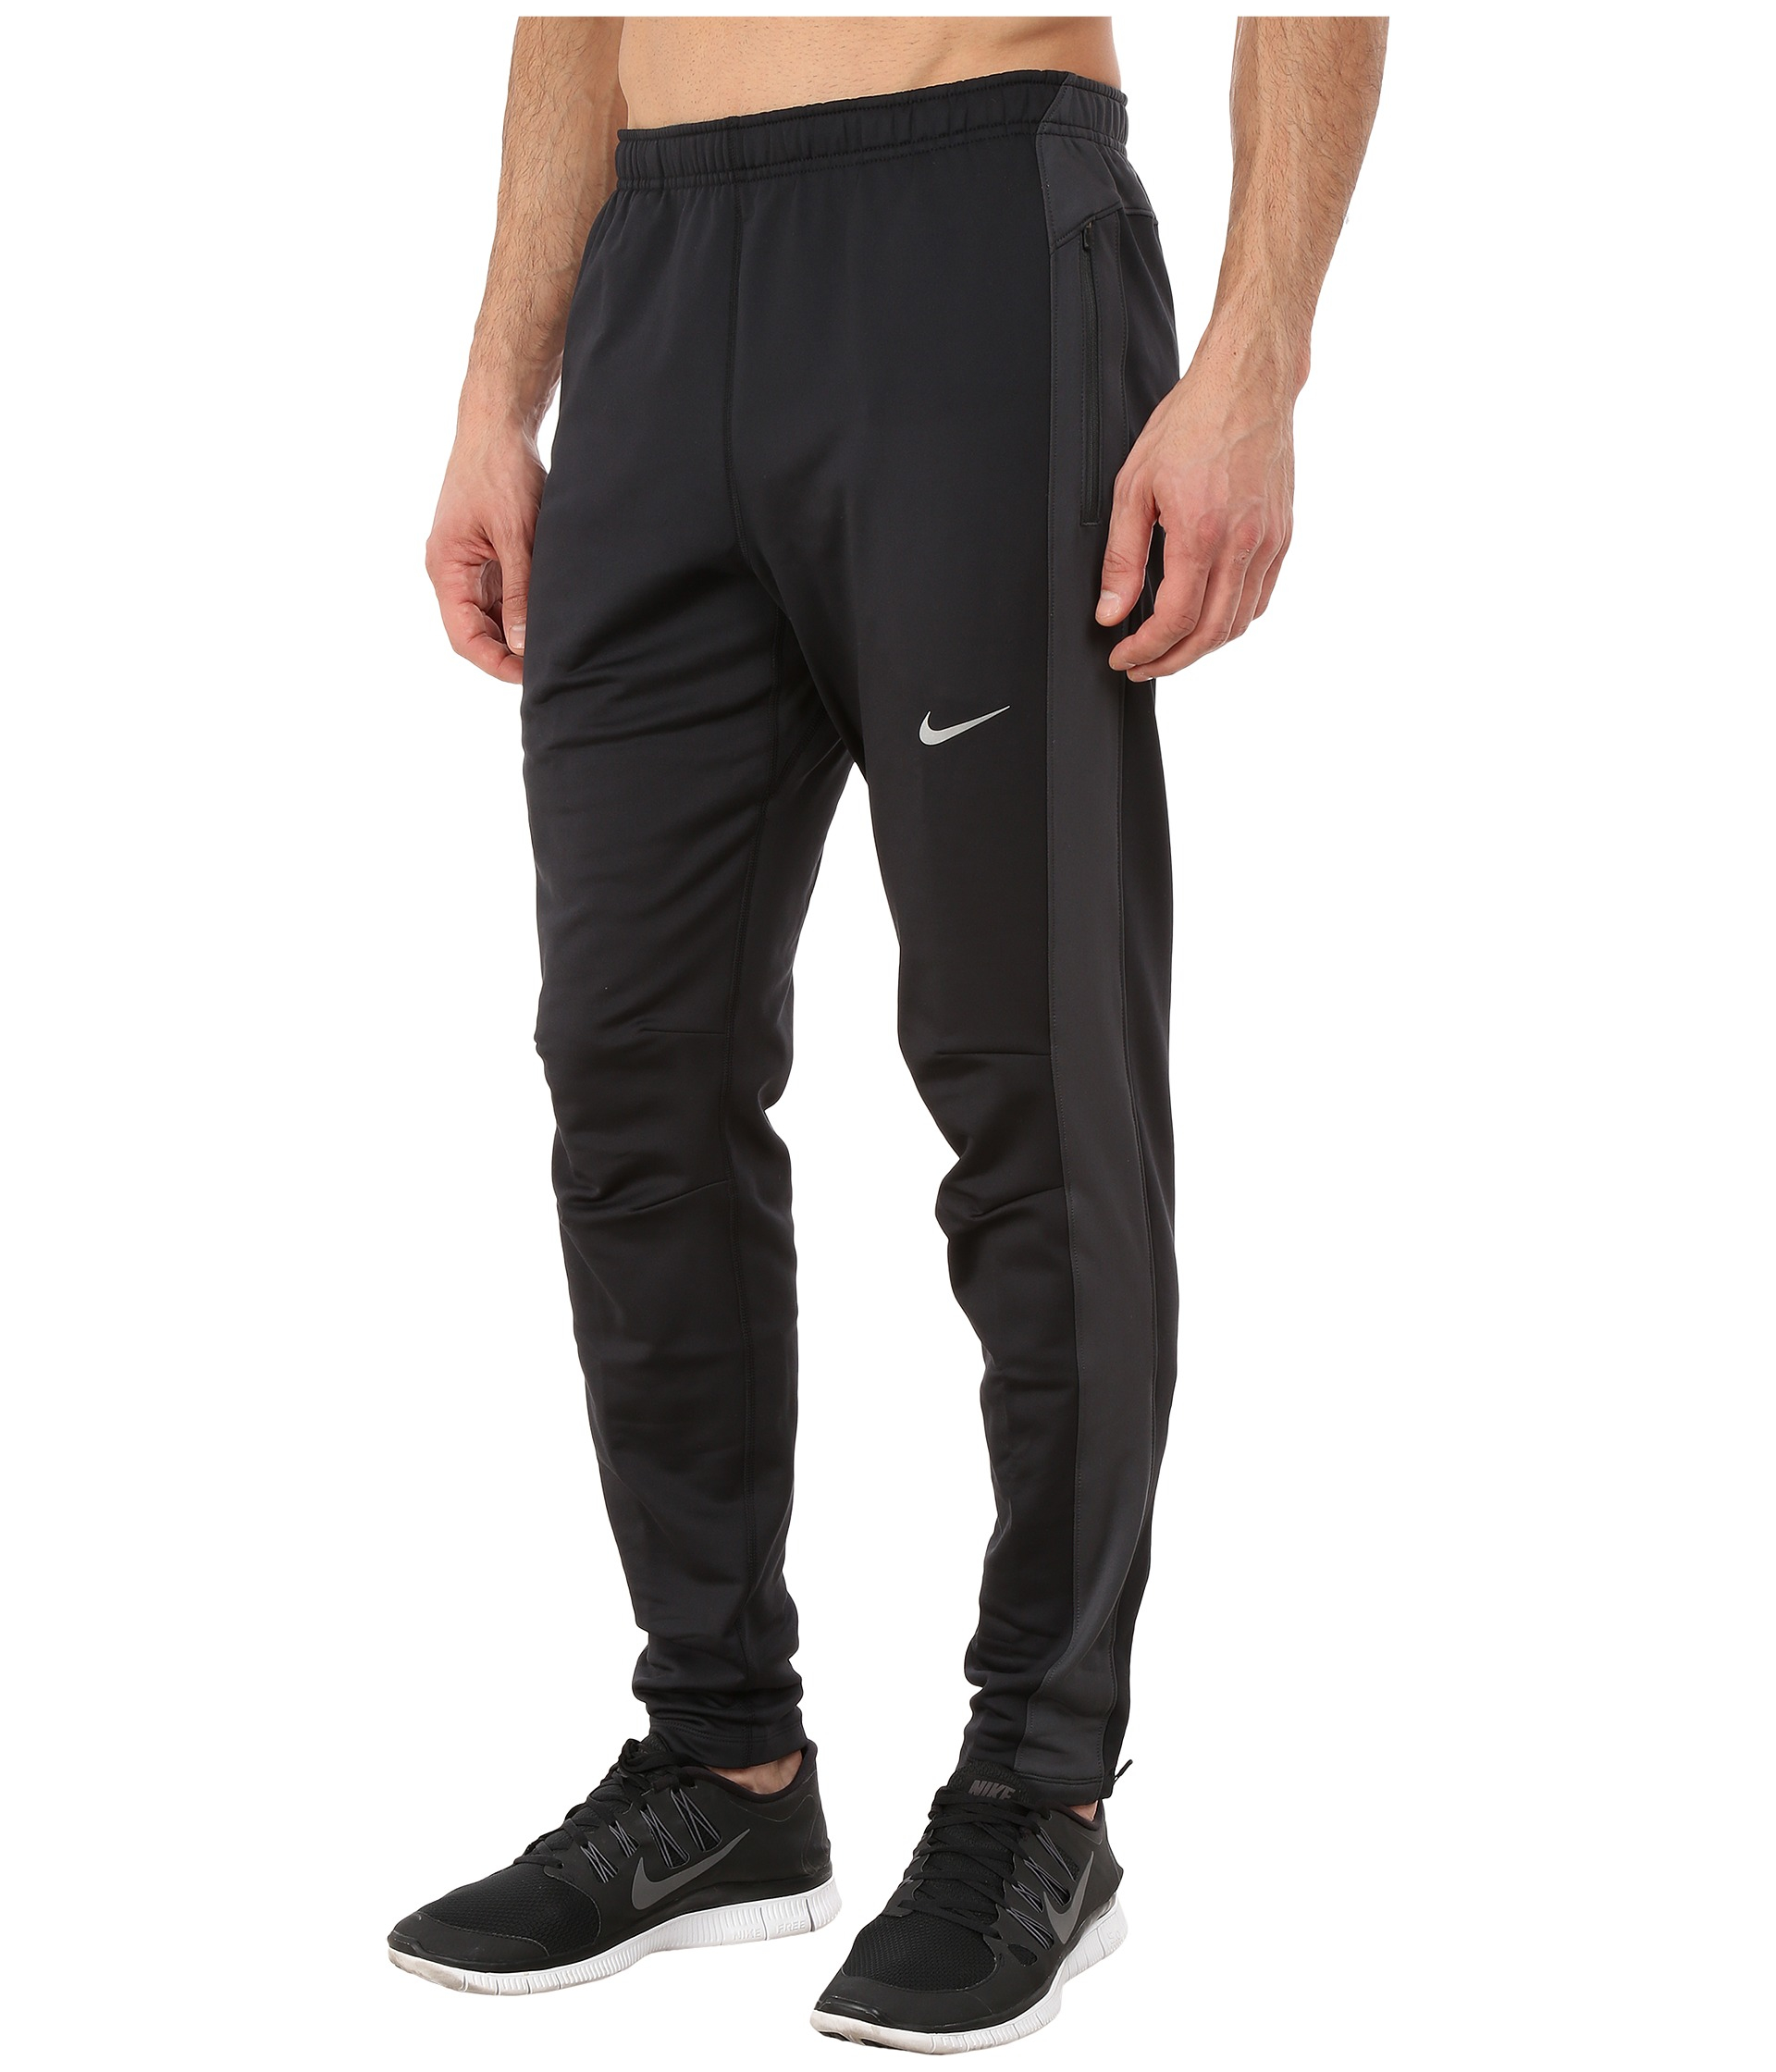 Nike Dri-fit™ Thermal Pants in Black for Men - Lyst